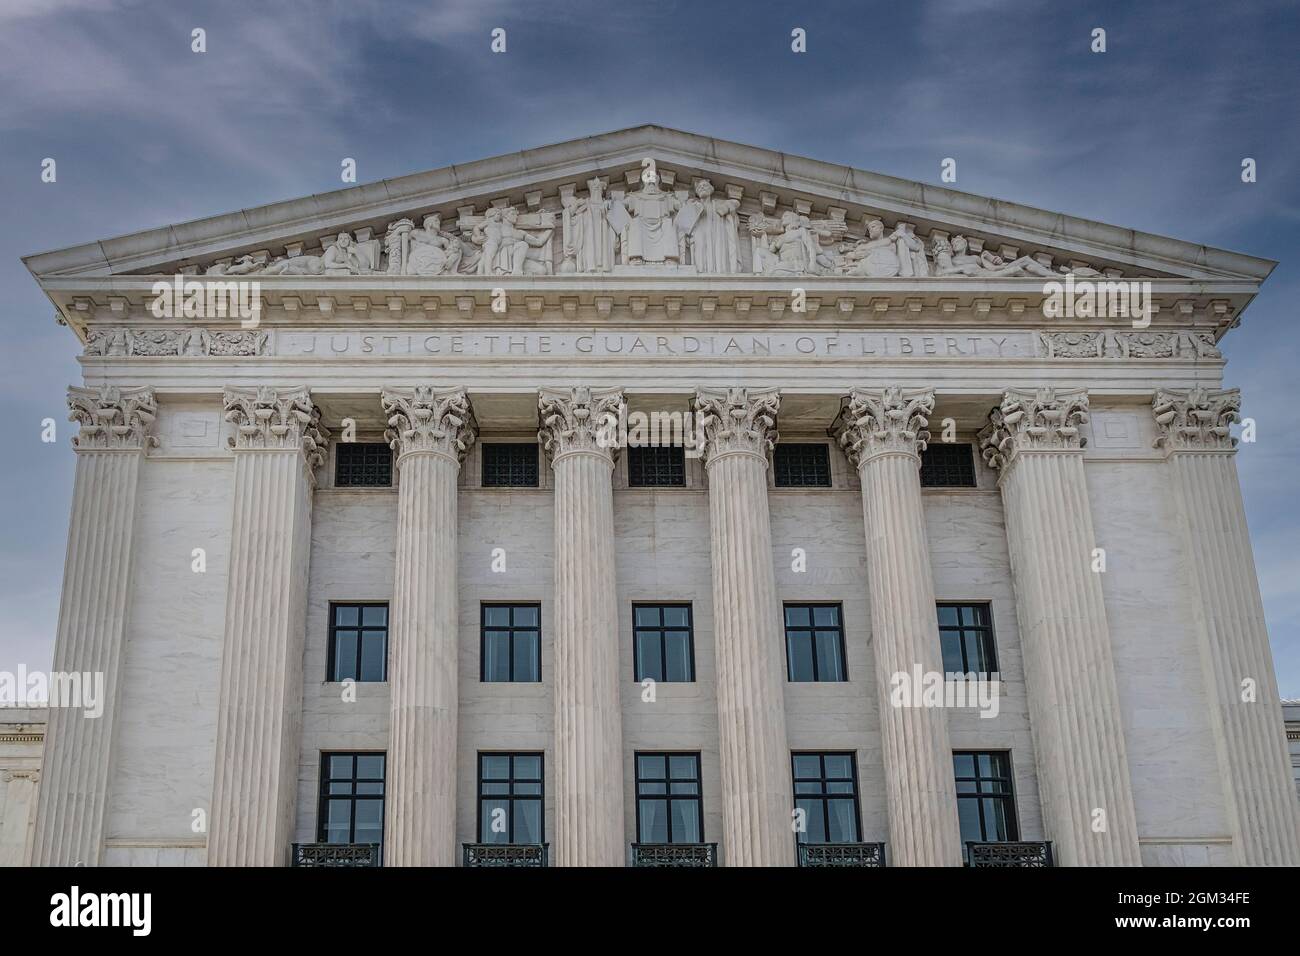 Gerechtigkeit der Wächter der Freiheit SCOTUS - Giebel und Säulen auf der Ostseite des Obersten Gerichtshofs der Vereinigten Staaten in Washington DC. Dieses Bild Stockfoto